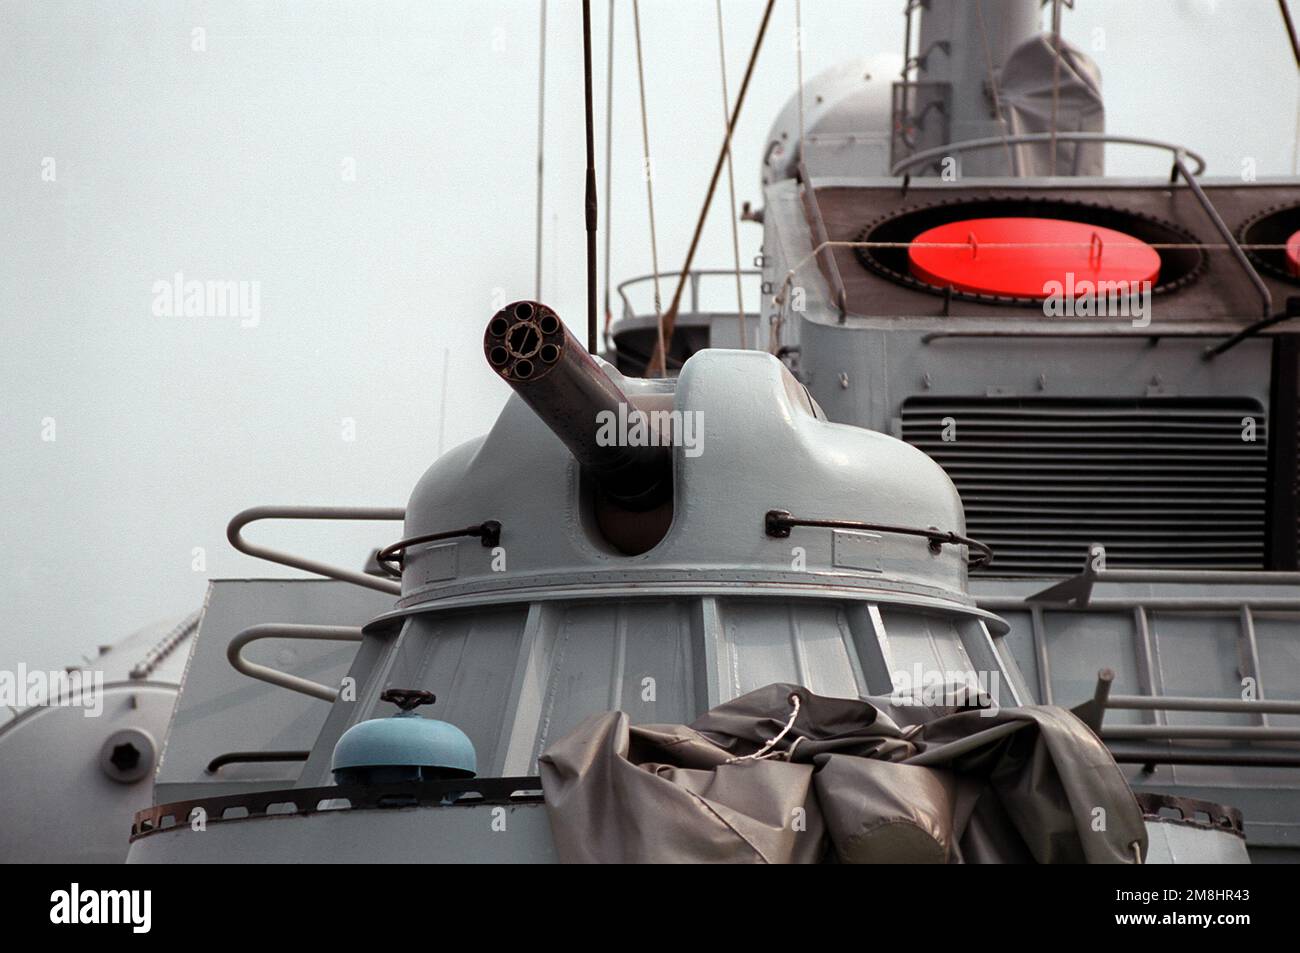 Ein Blick auf eines der AK-630 30mm/65-Waffensysteme mit mehreren Fässern in der Nähe an Bord des USNS HIDDENSEE (185NS9201), das in der Naval Sea Systems Command-Einrichtung im Solomons Annex festgemacht ist. Die sowjetisch gebaute Tarantul-Raketencorvette der Klasse I wurde im November 1991 von der deutschen Bundesflotte erworben und wird derzeit von den USA getestet und bewertet Die Marine. Das Schiff wurde nach der Wiedervereinigung Deutschlands im Jahr 1990 in "HIDDENSEE" umbenannt, als es zur ostdeutschen Marine gehörte. Land: Salomonen Stockfoto